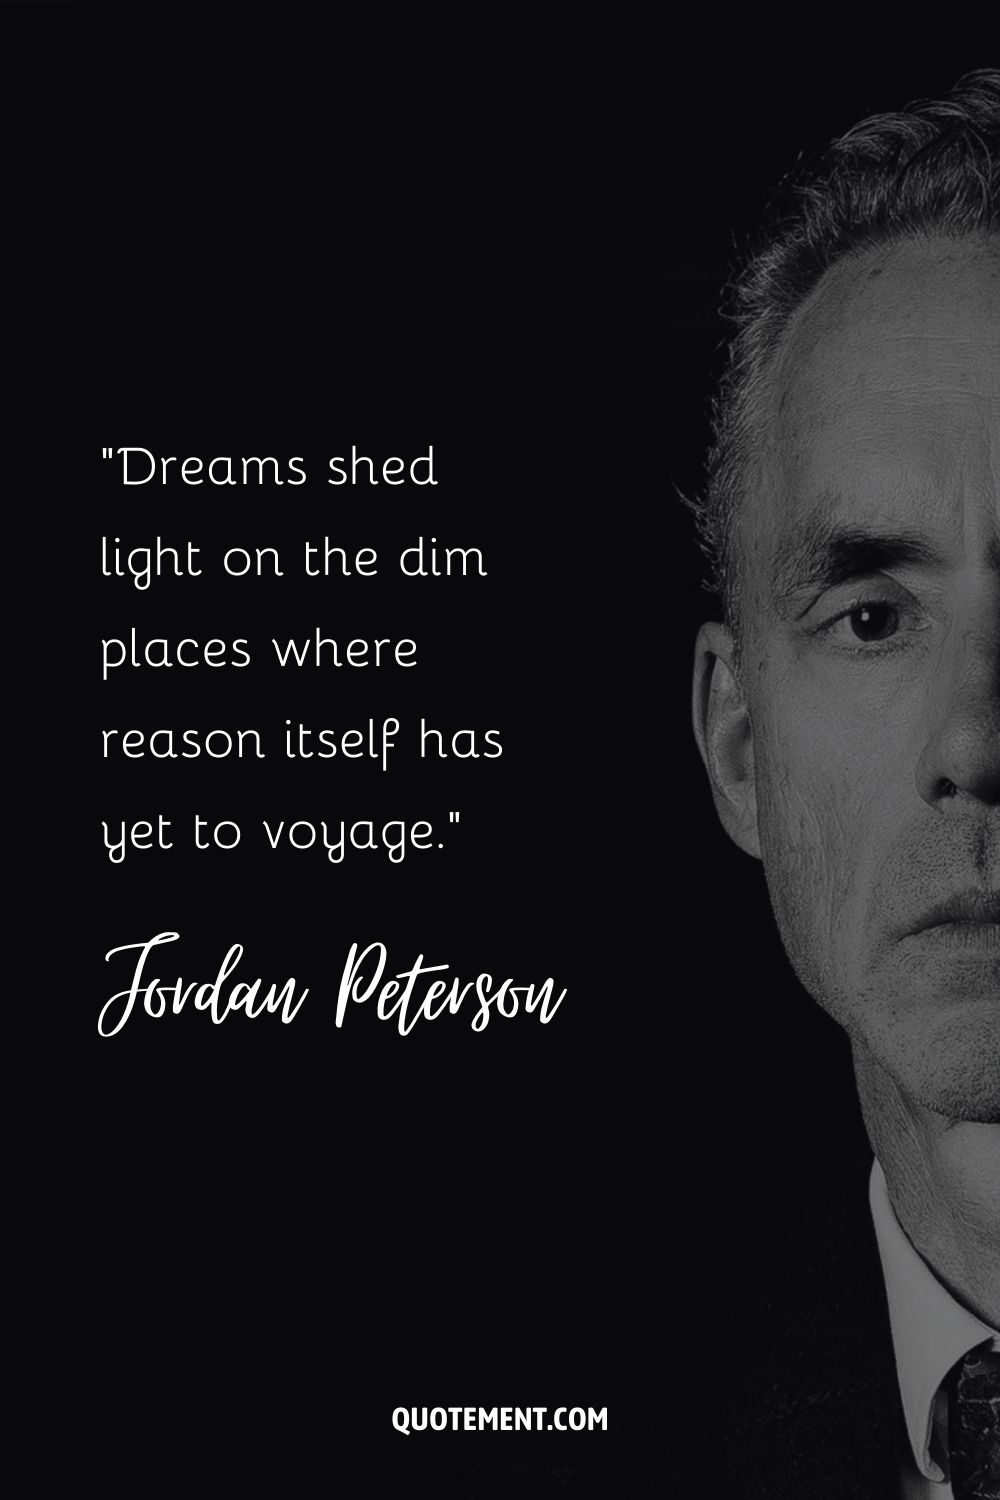 Jordan Peterson quote about dreams.